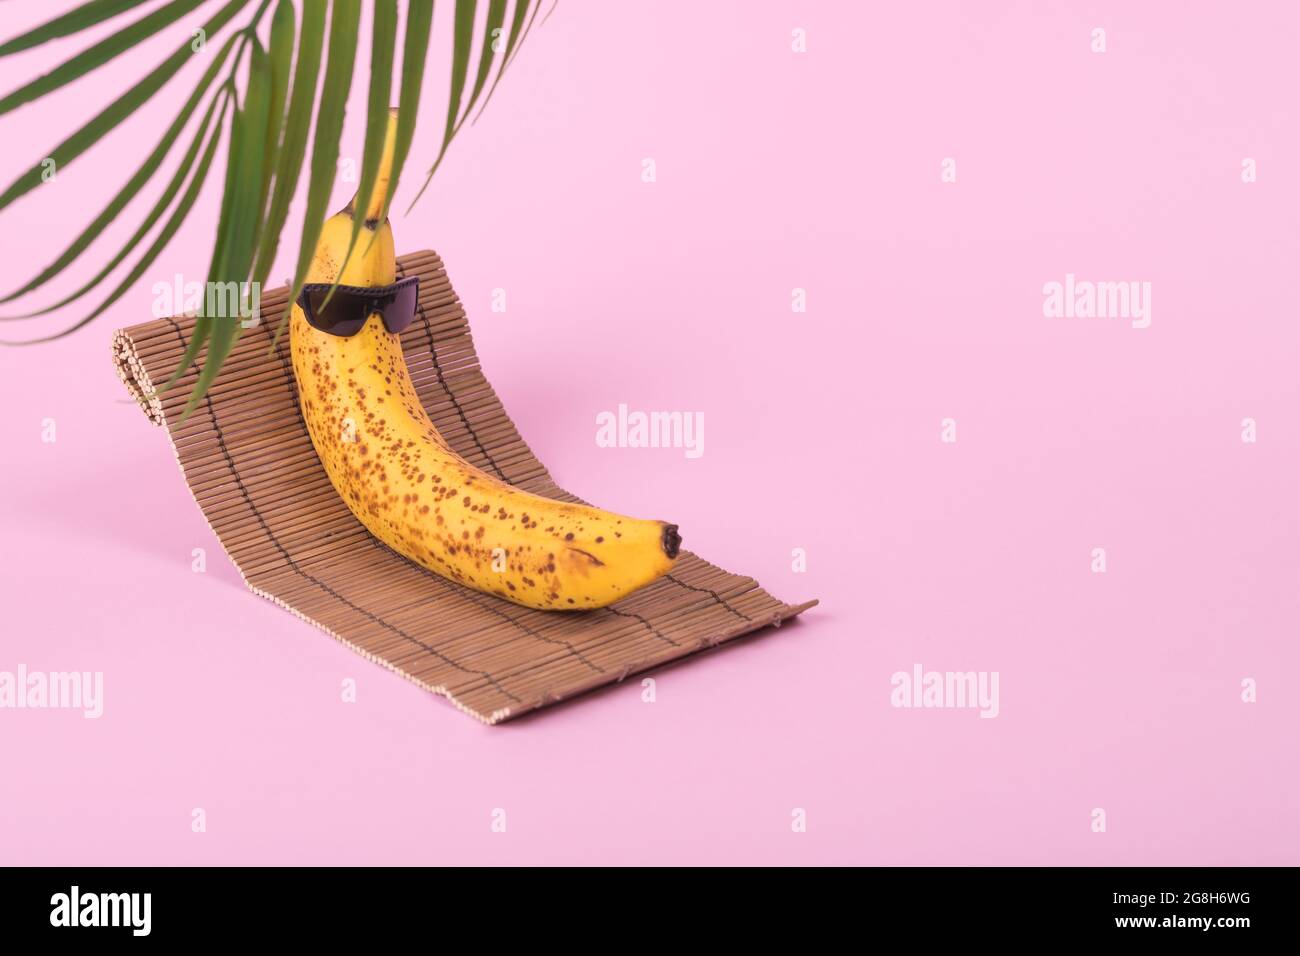 Idée amusante et créative avec une banane dans des lunettes de soleil  couchée sur un lit de soleil avec une feuille de palmier sur un fond rose  pastel. Concept de voyage minimal,